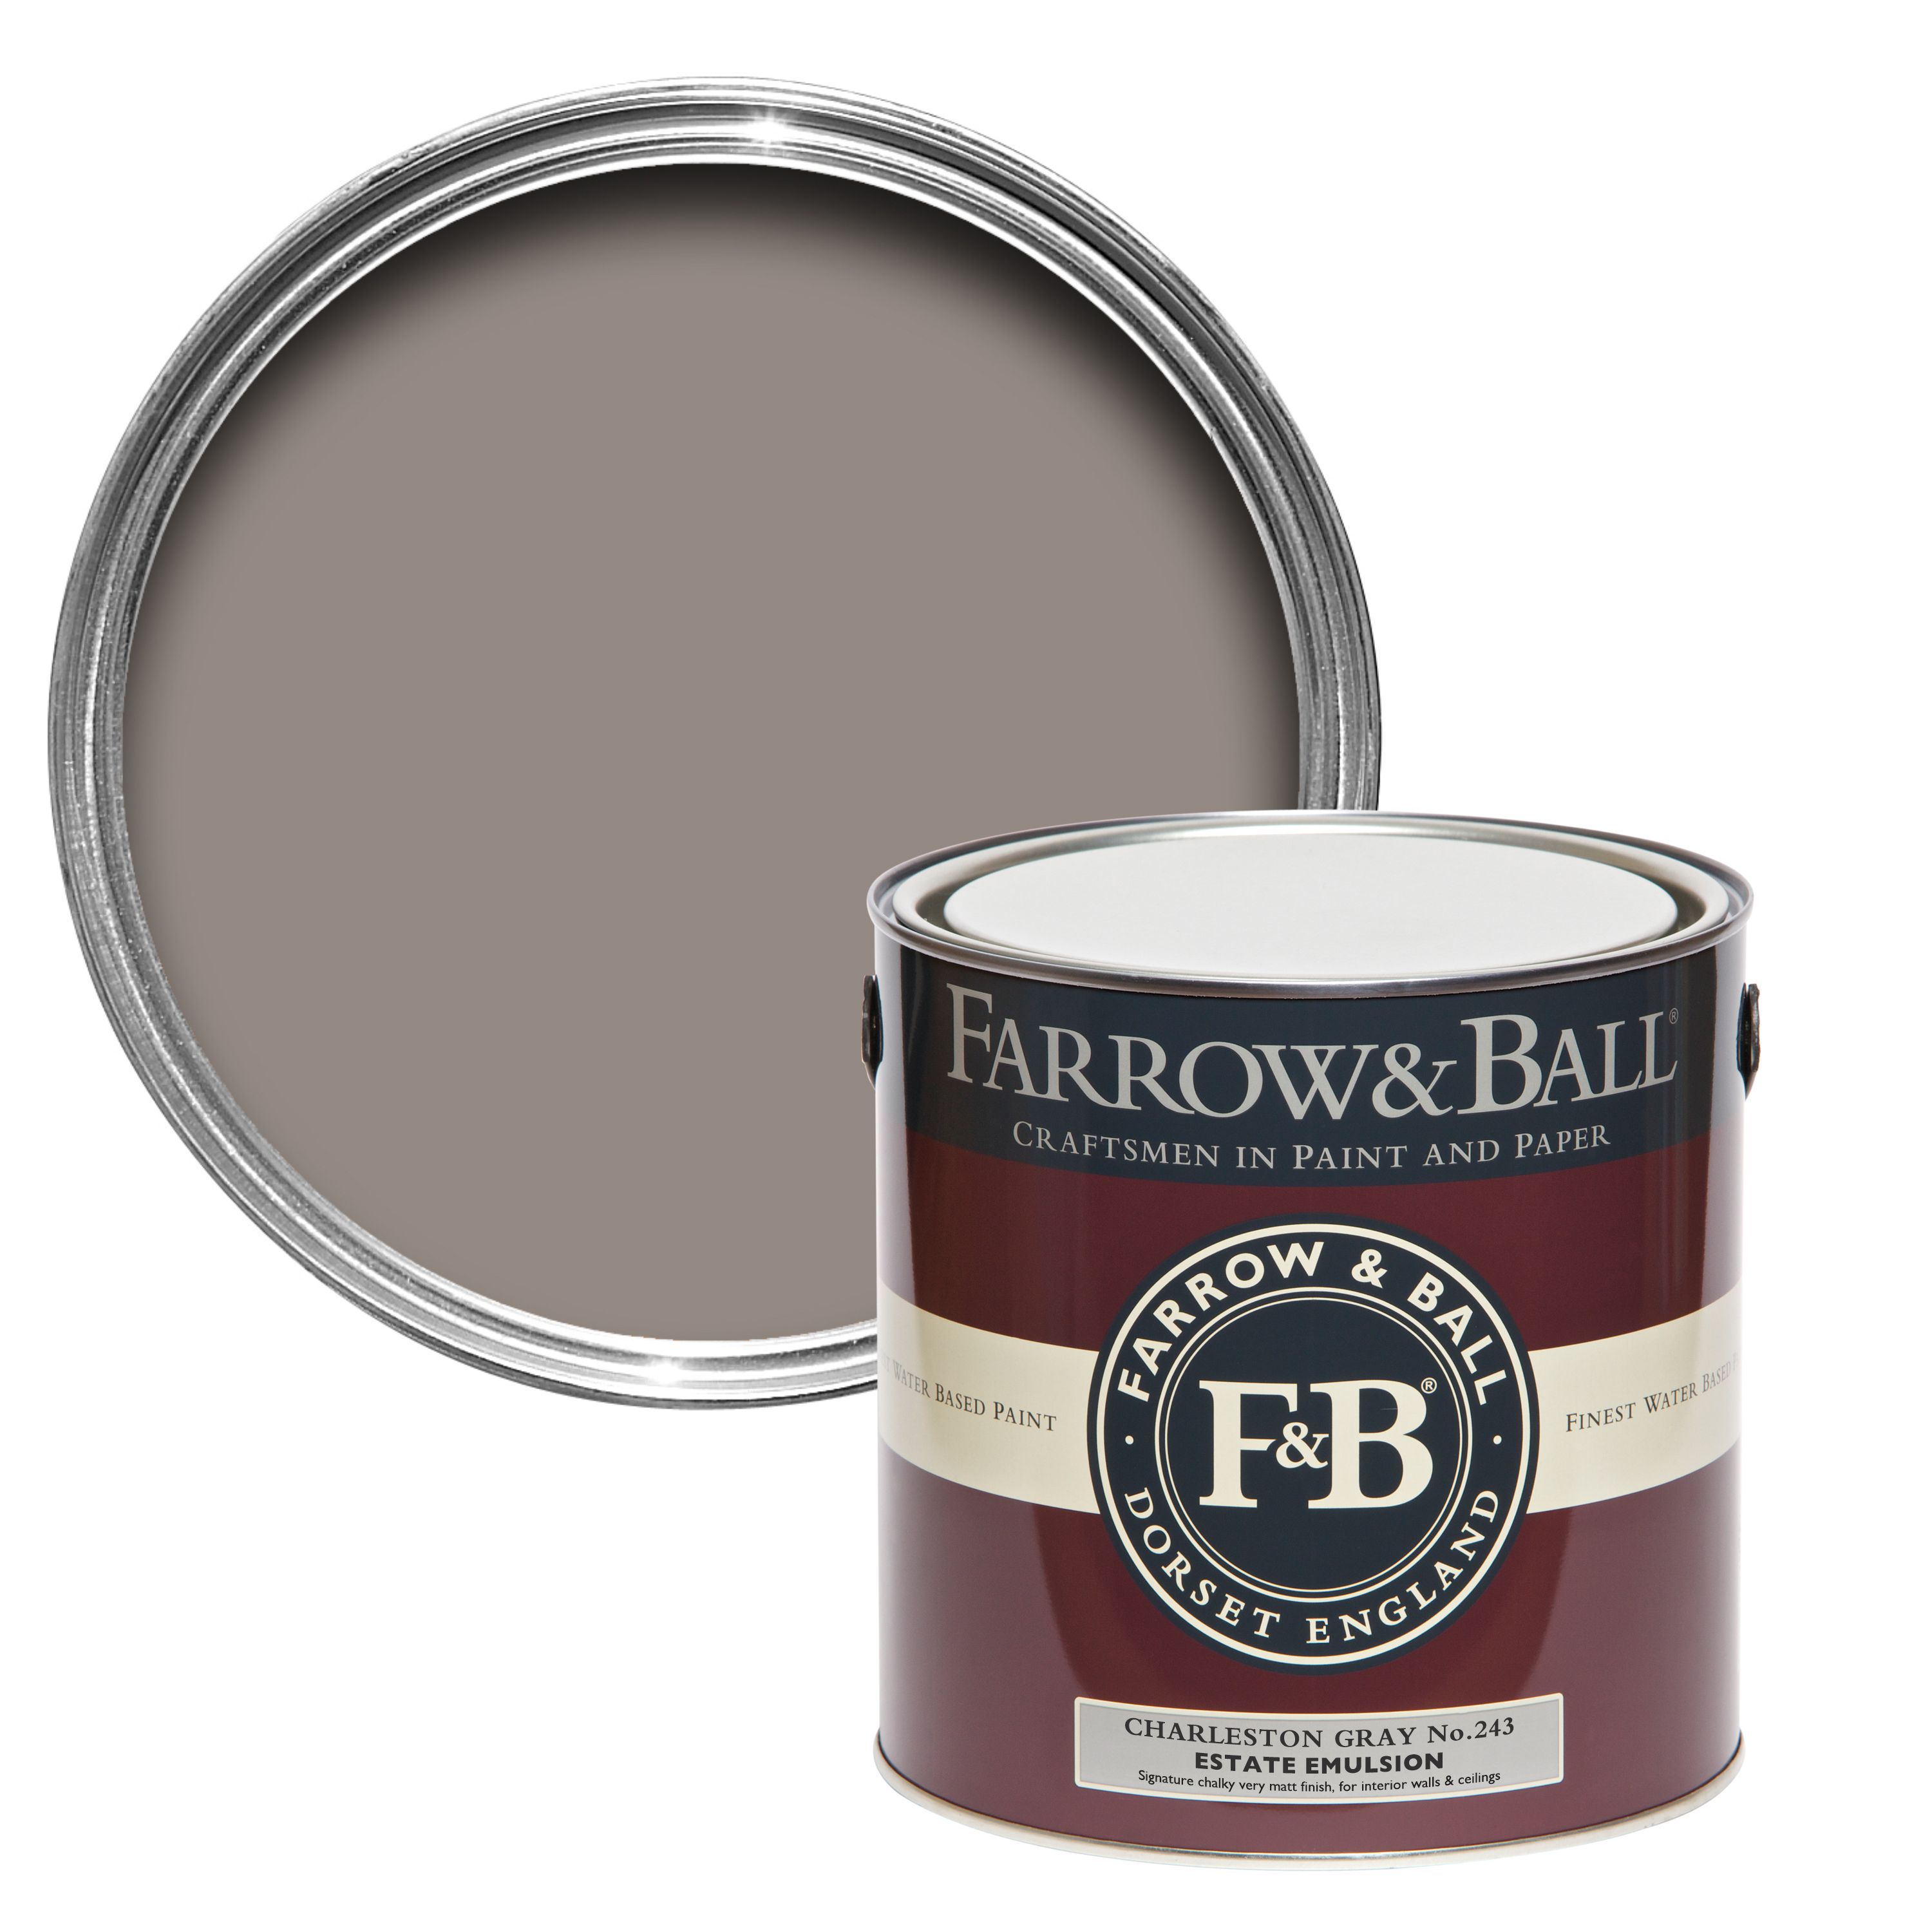 Farrow & Ball Estate Charleston gray No.243 Matt Emulsion paint, 2.5L Tester pot